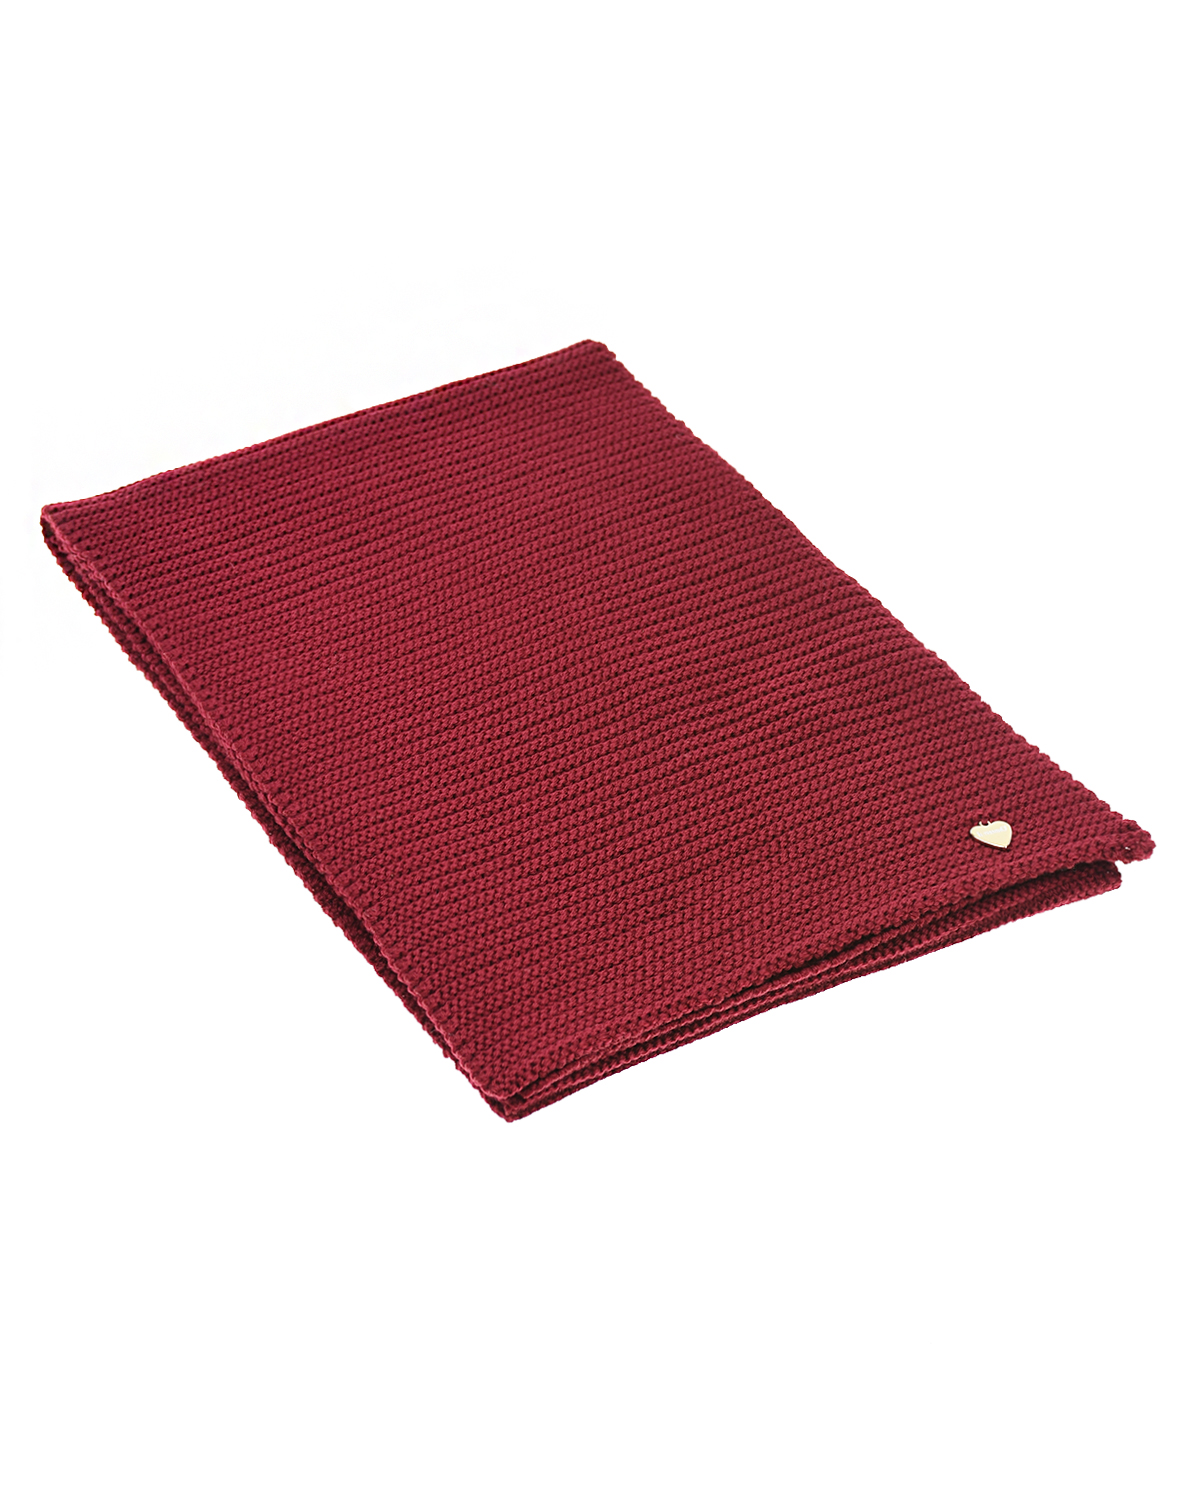 Красный вязаный шарф 150х22 см Il Trenino детский - фото 1